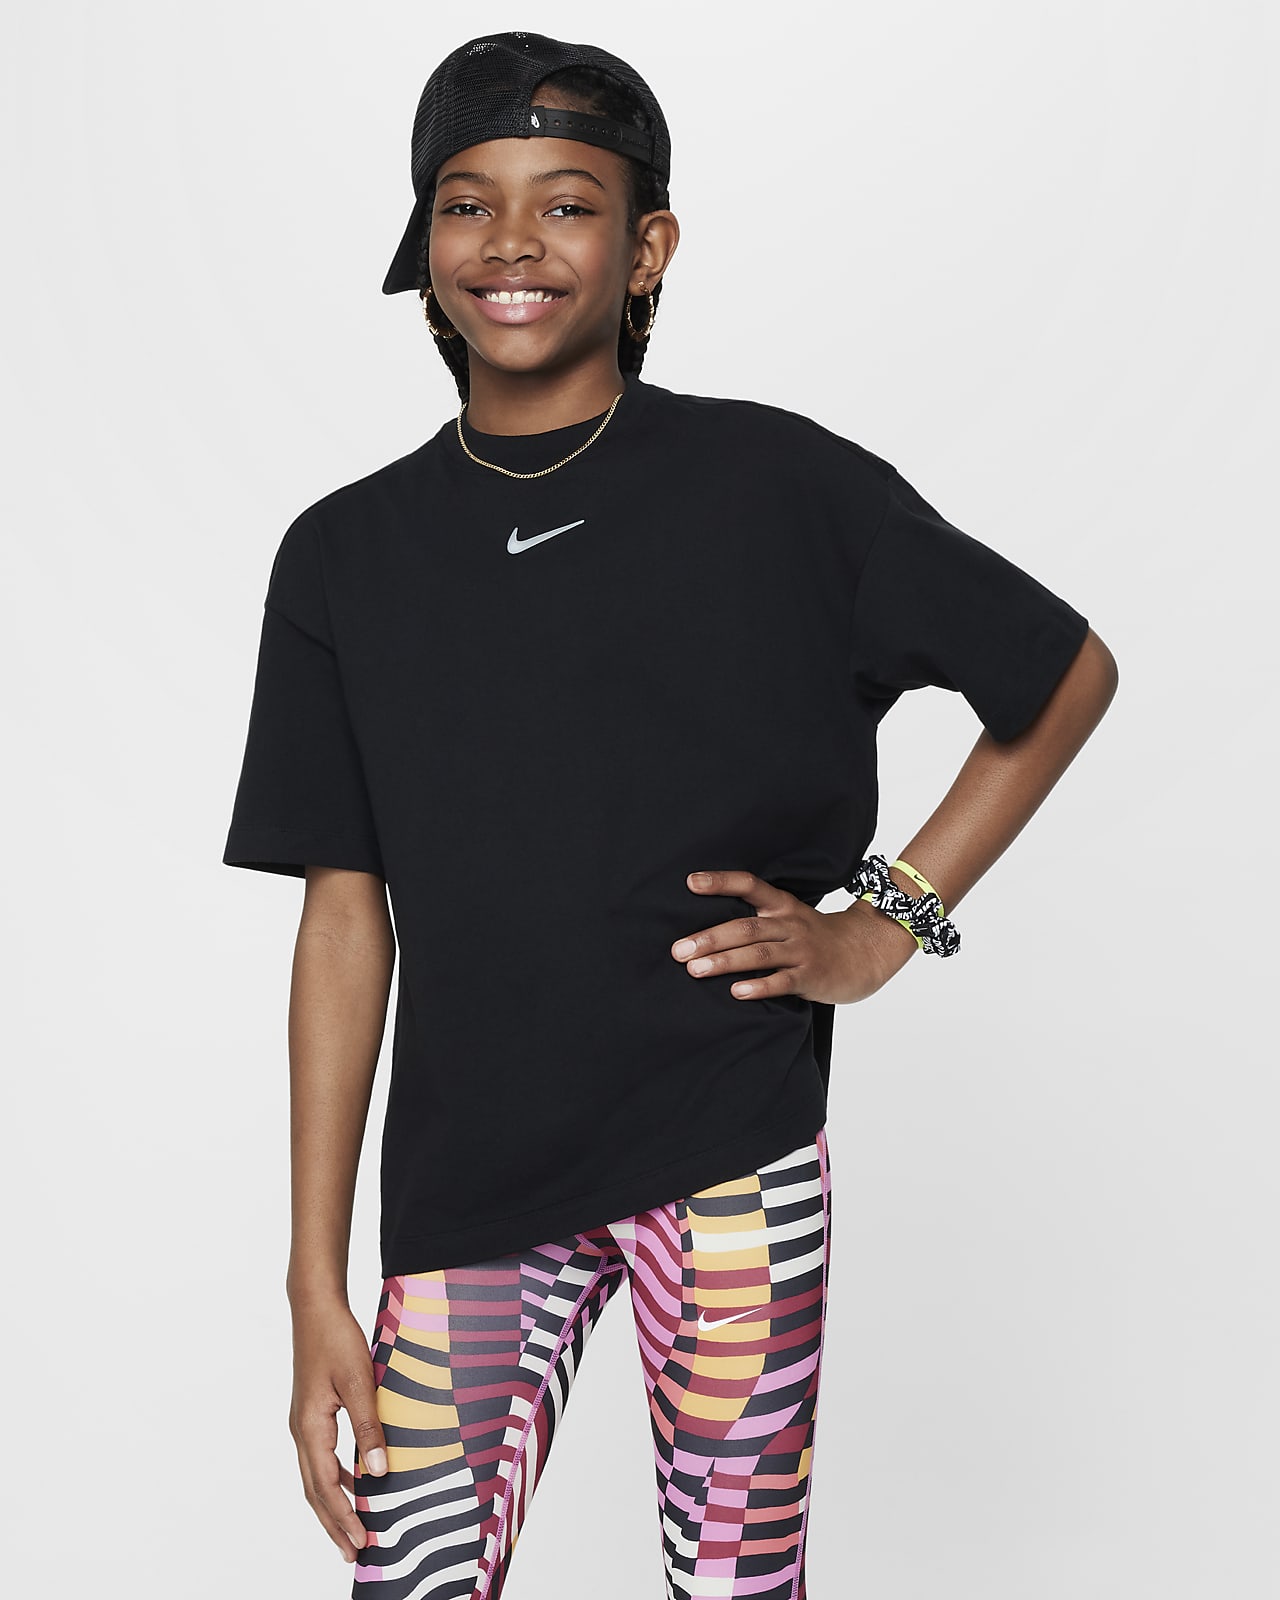 Oversized t-shirt Nike Sportswear för ungdom (tjejer)